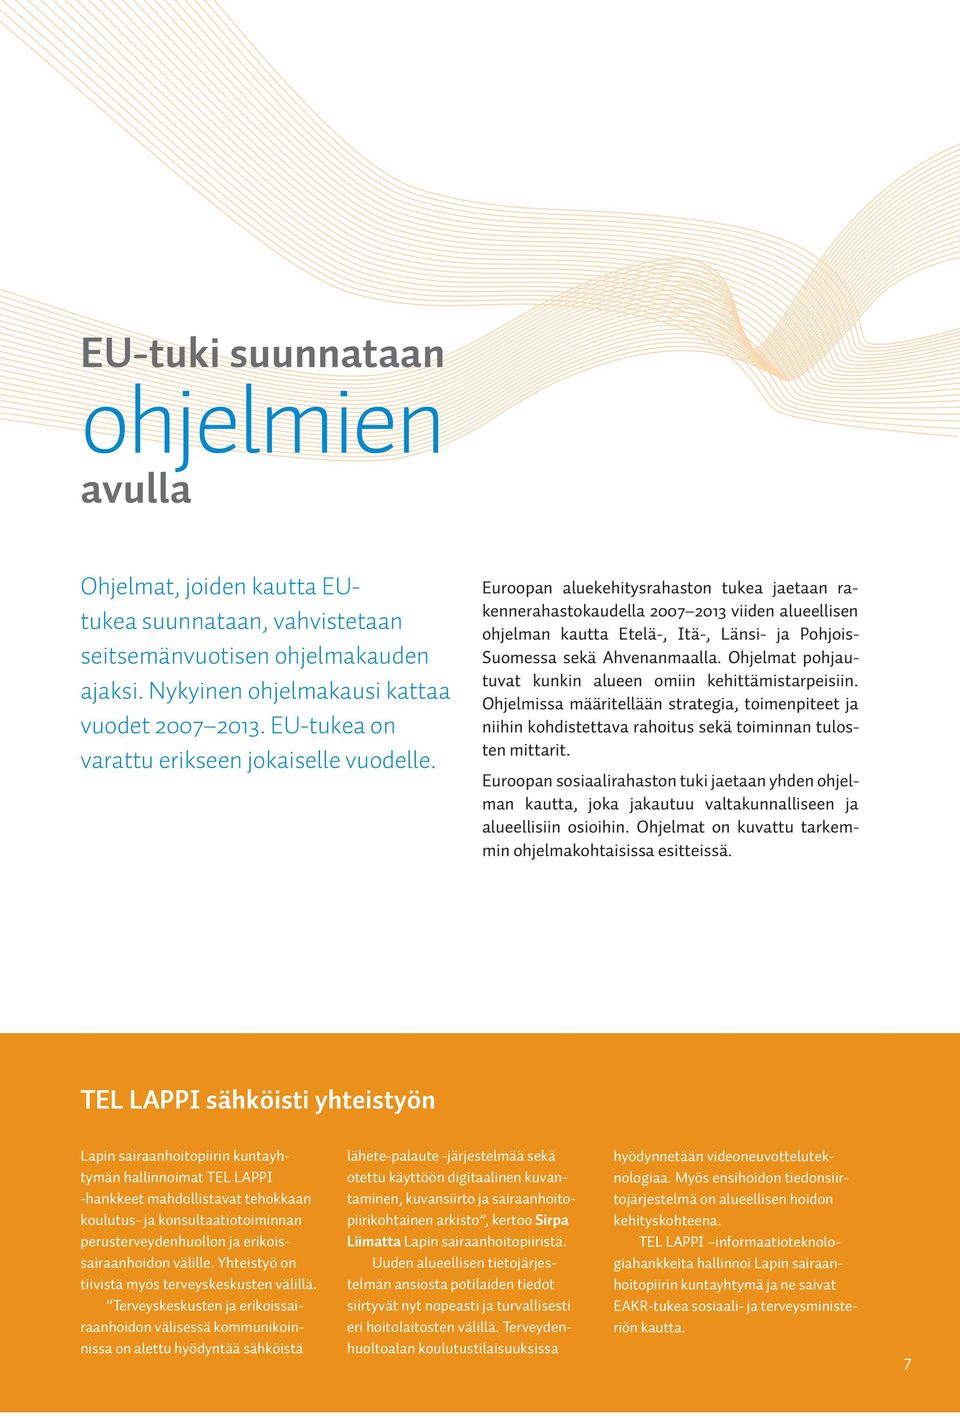 Euroopan aluekehitysrahaston tukea jaetaan rakennerahastokaudella 2007 2013 viiden alueellisen ohjelman kautta Etelä-, Itä-, Länsi- ja Pohjois- Suomessa sekä Ahvenanmaalla.